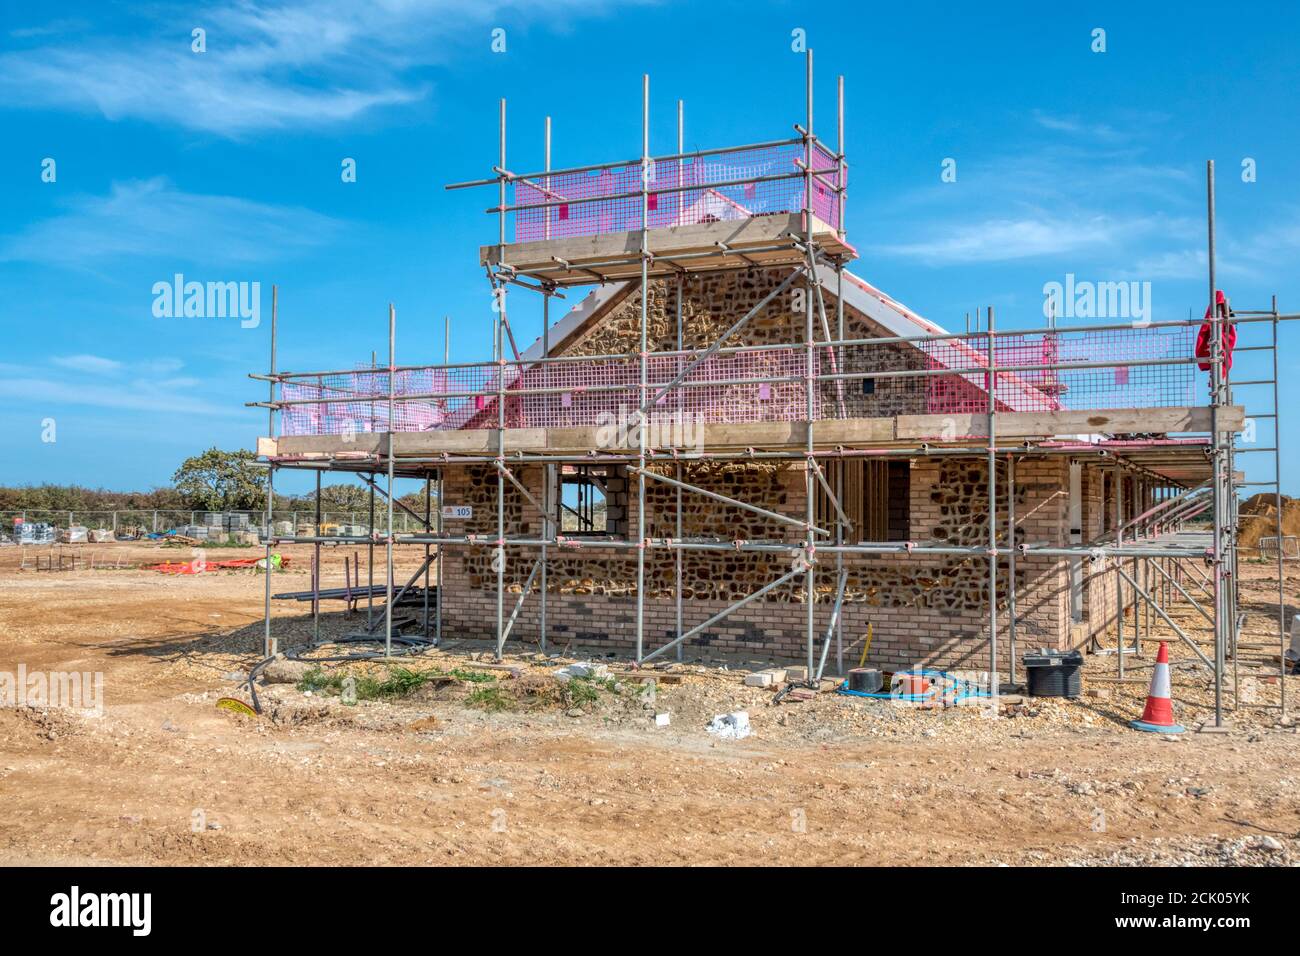 Nuova tenuta di case da Bennett Homes in costruzione su un sito di campo verde a St Edmund's Park, sul bordo di Hunstanton nel nord Norfolk. Foto Stock